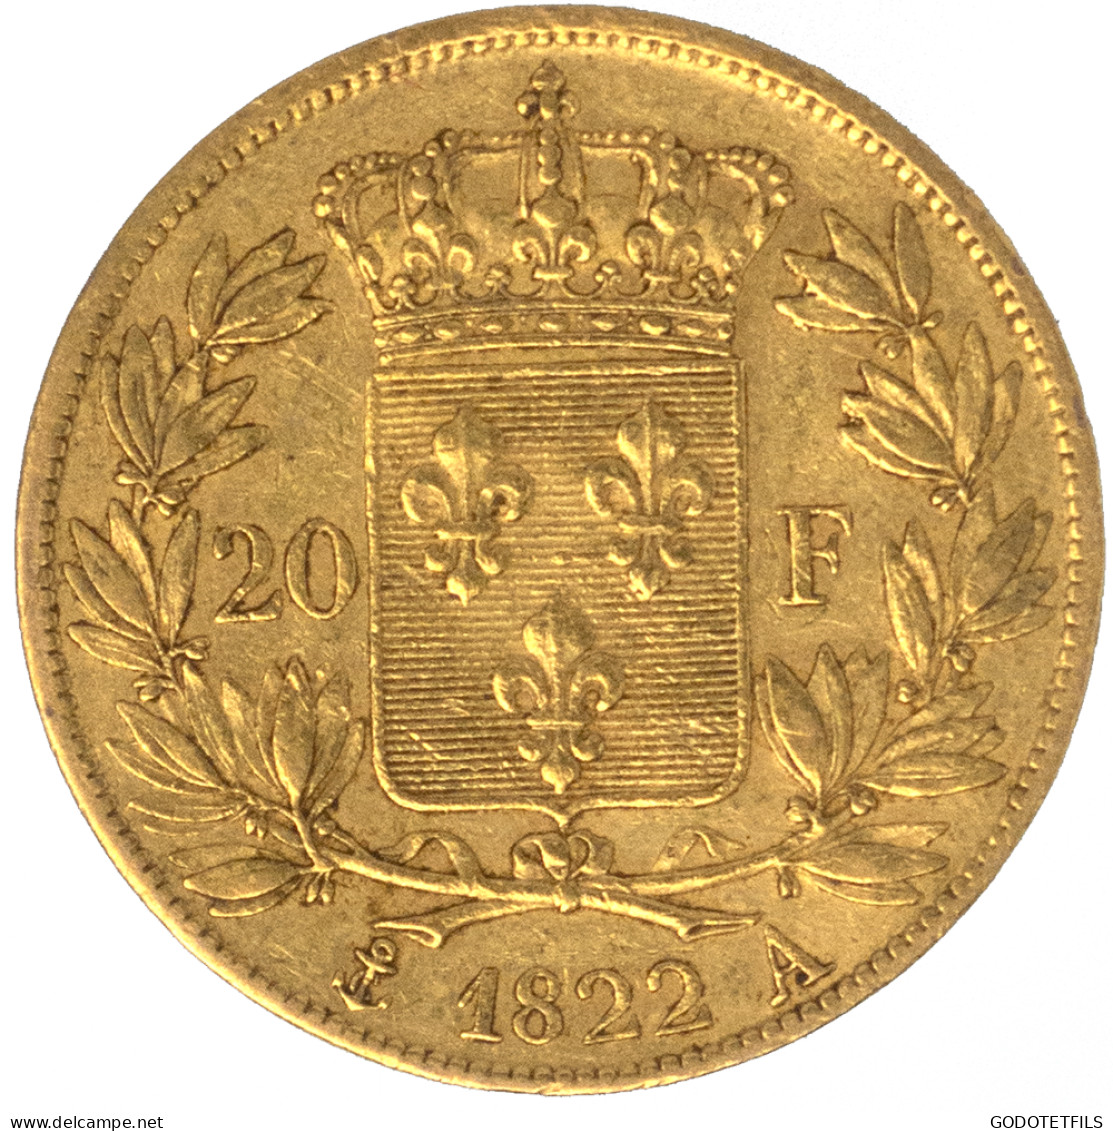 Louis XVIII-20 Francs 1822 Paris - 20 Francs (gold)